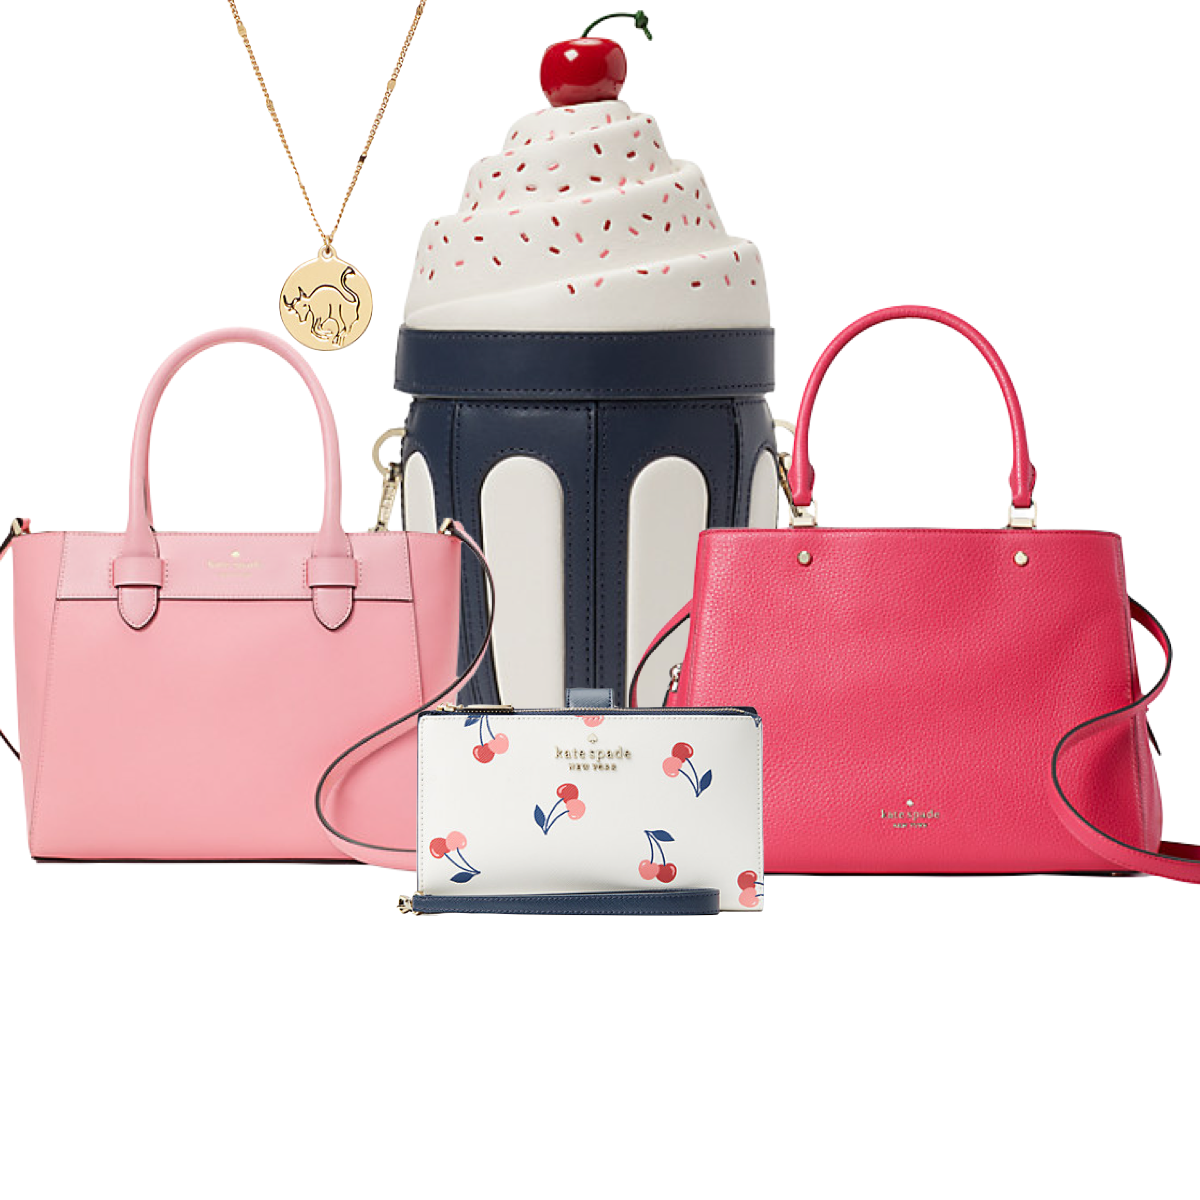 Kate Spade Surprise sale: Shop Kate Spade purses for under $65